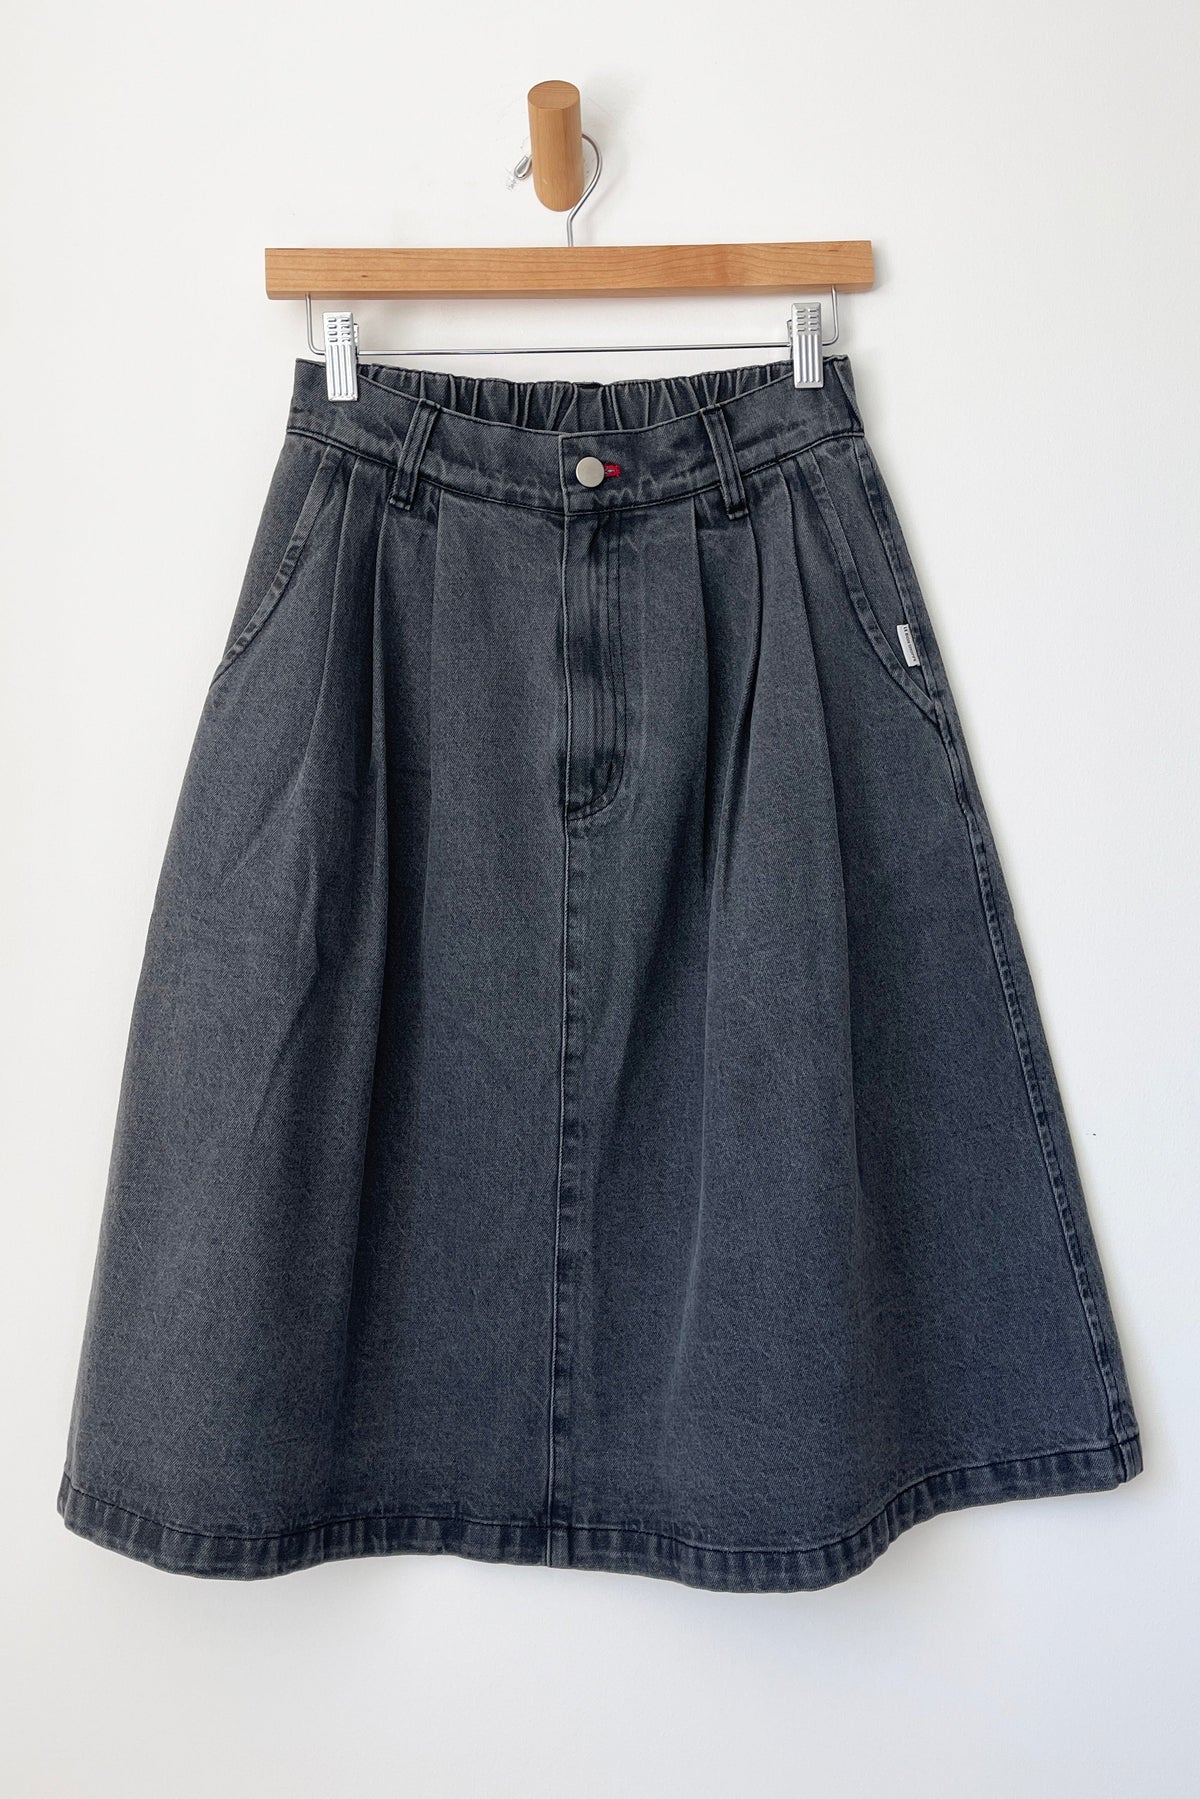 Farm Girl Skirt In Black Denim